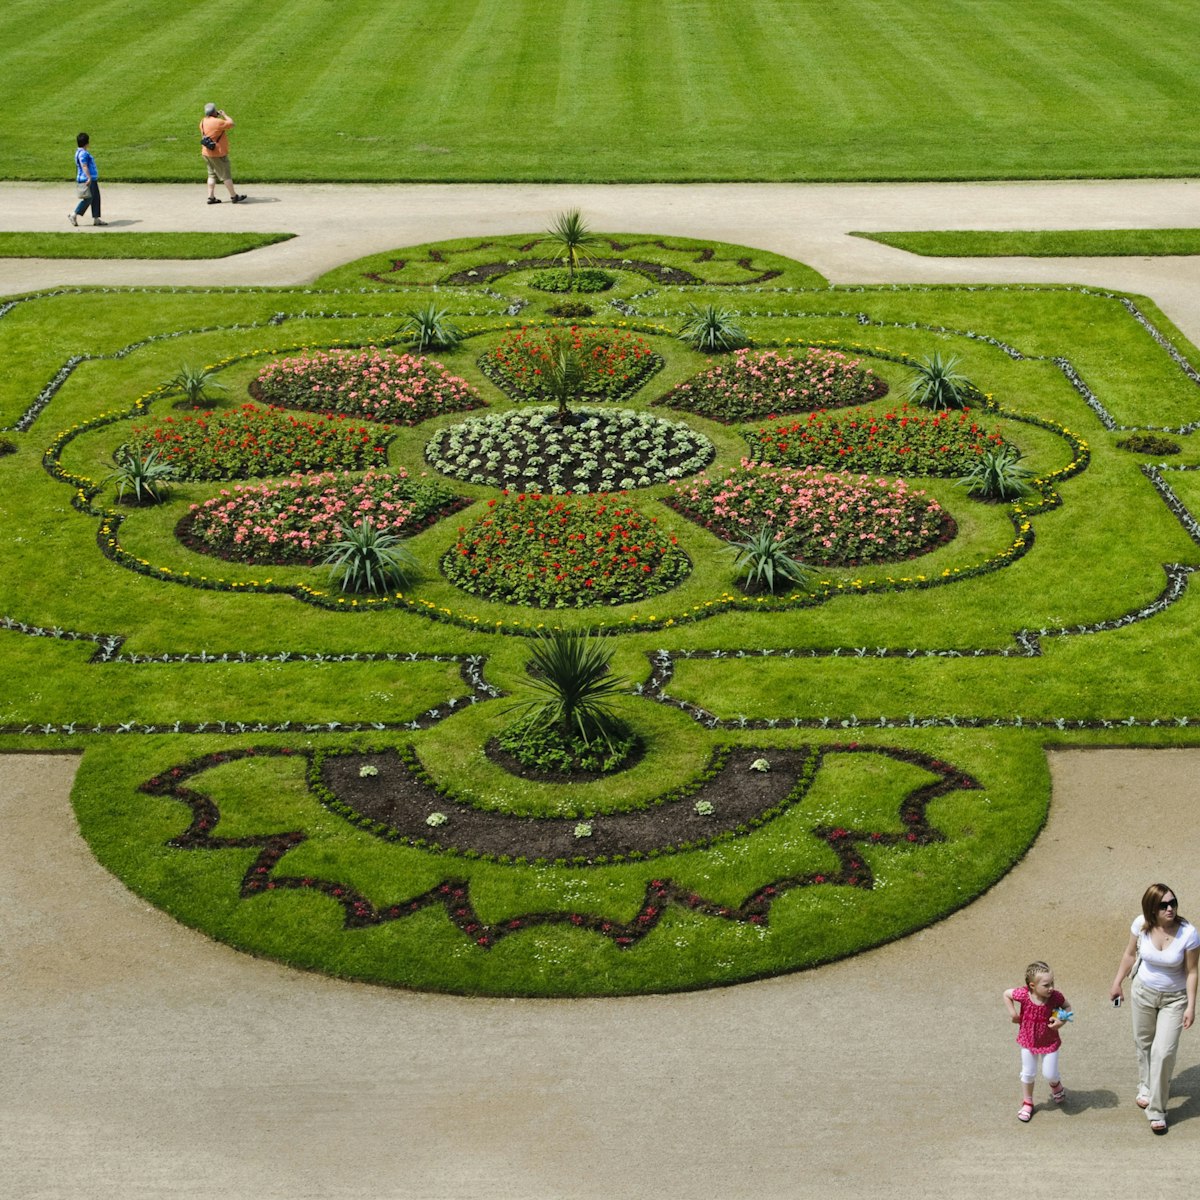 Grosser Garten, baroque garden, Dresden, Saxony, Germany